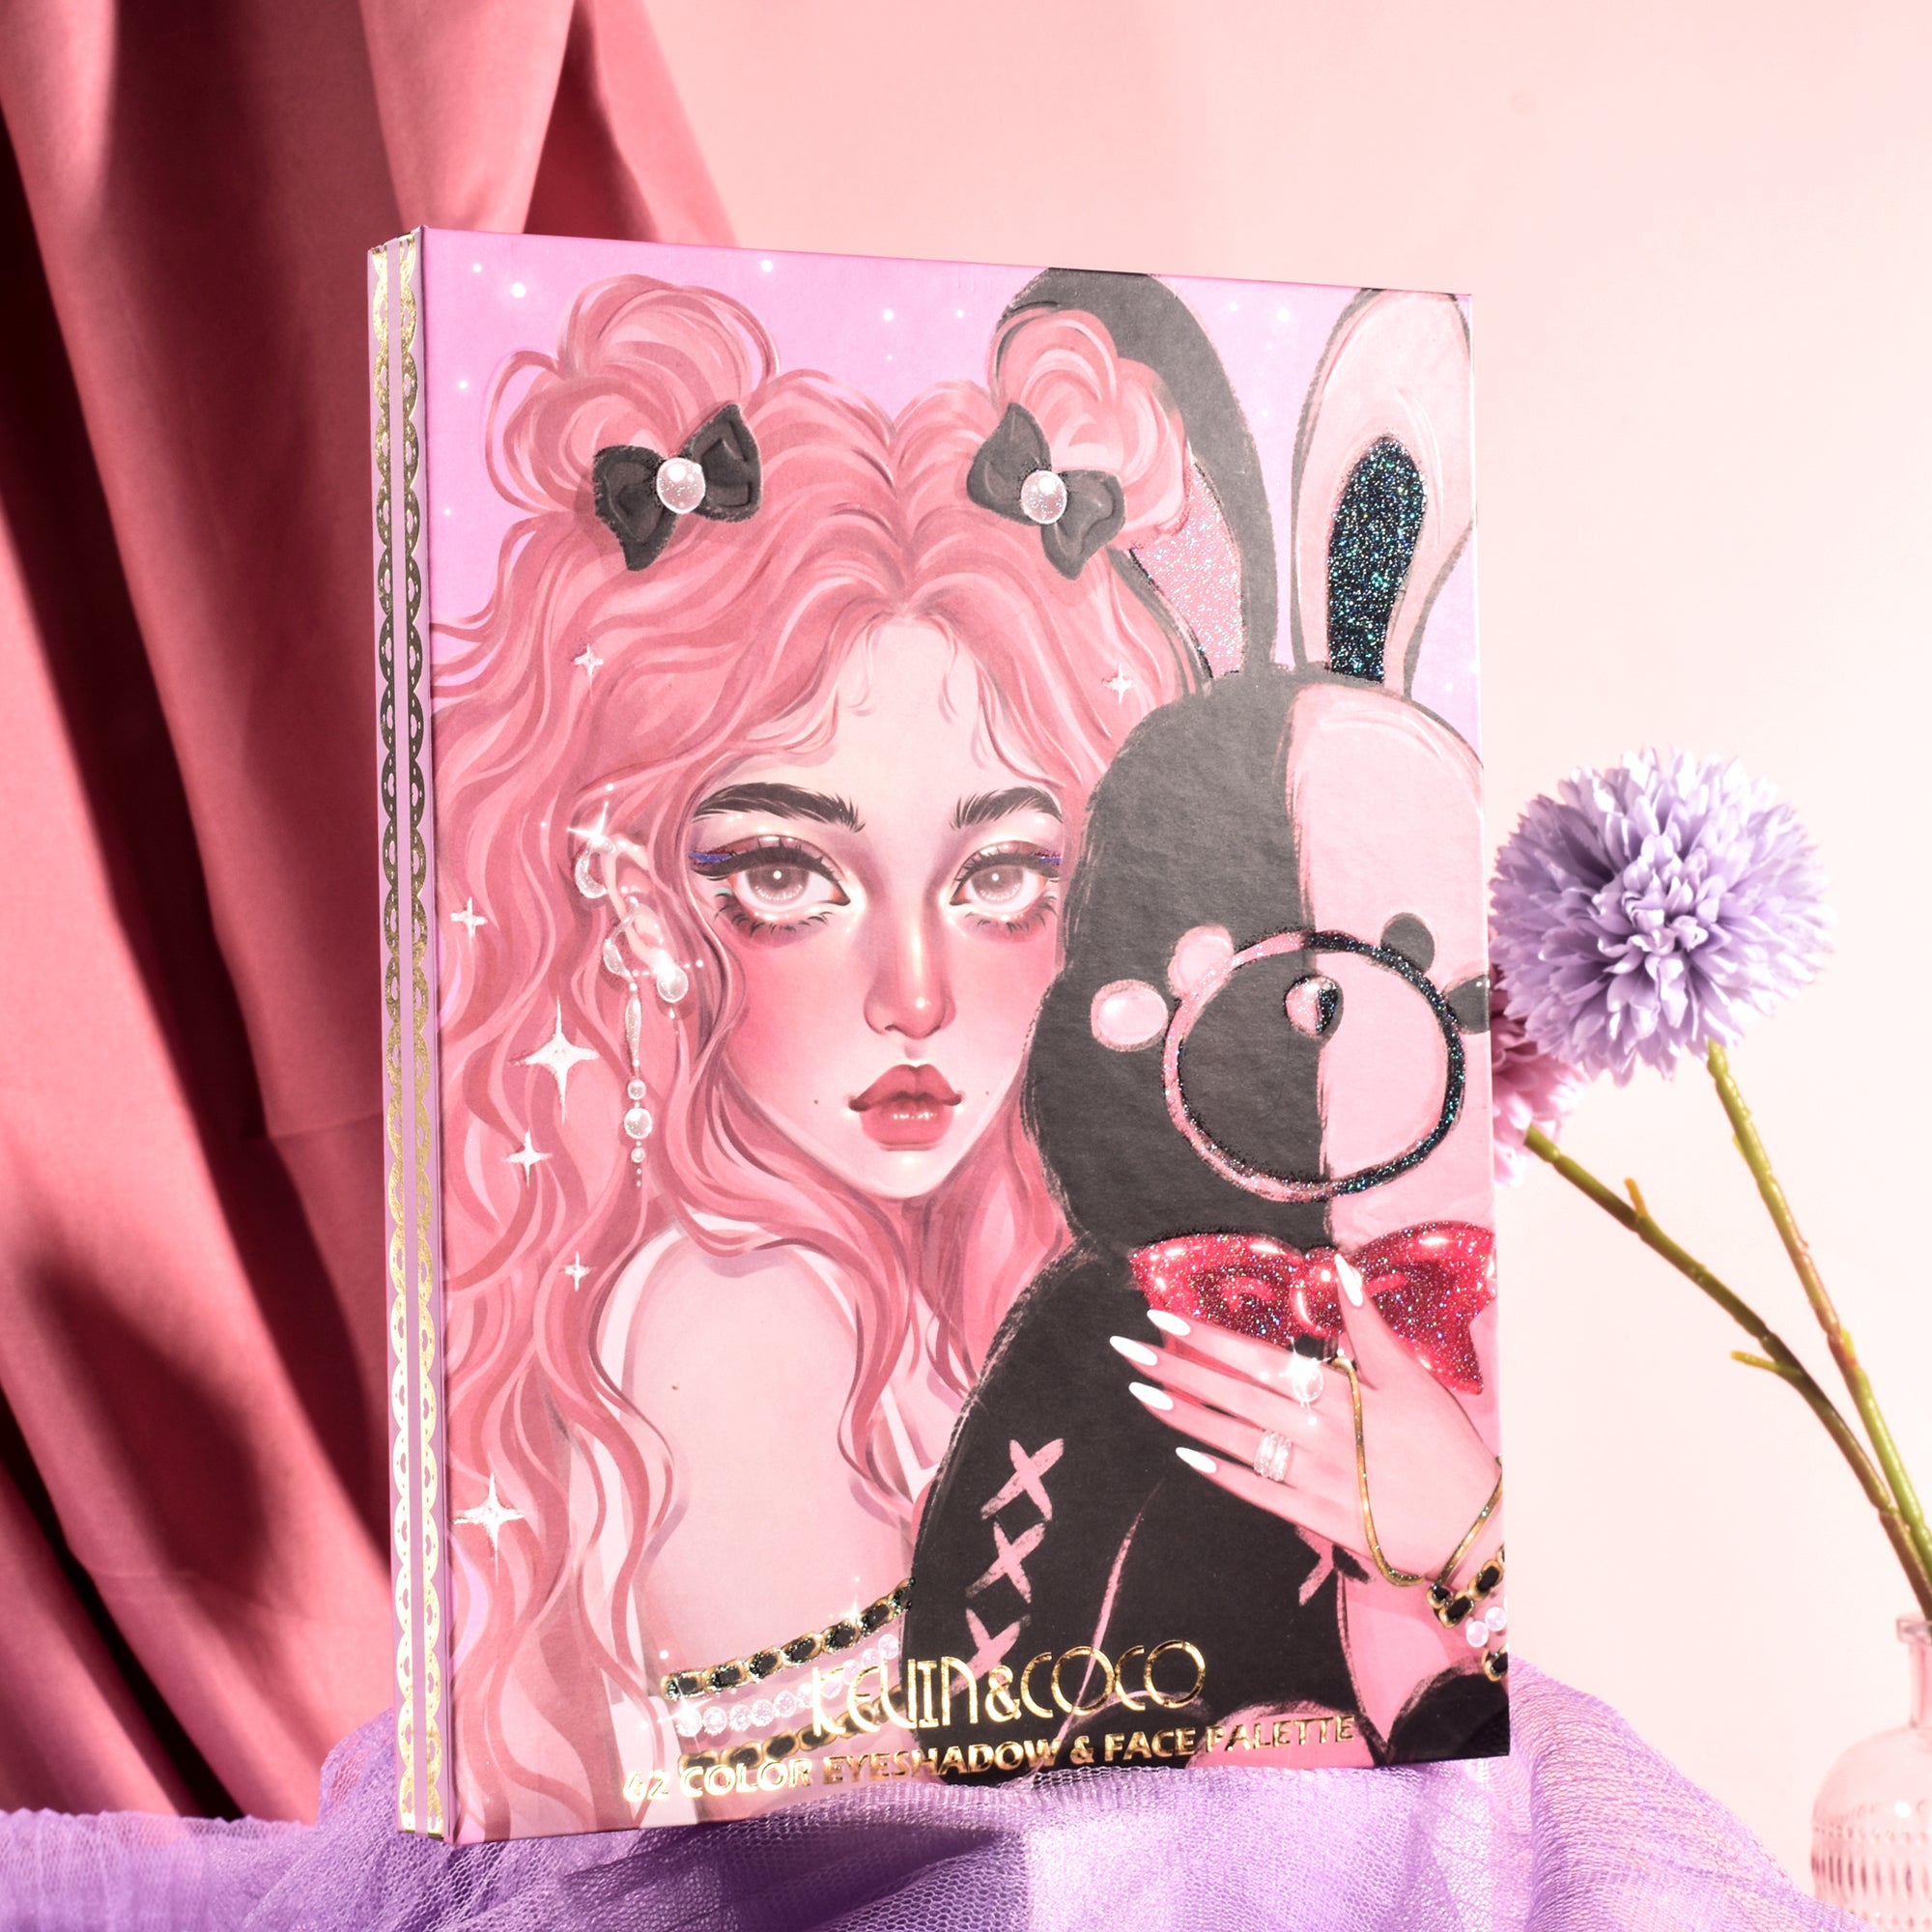 62-Color Bunny Girl Makeup Palette Set